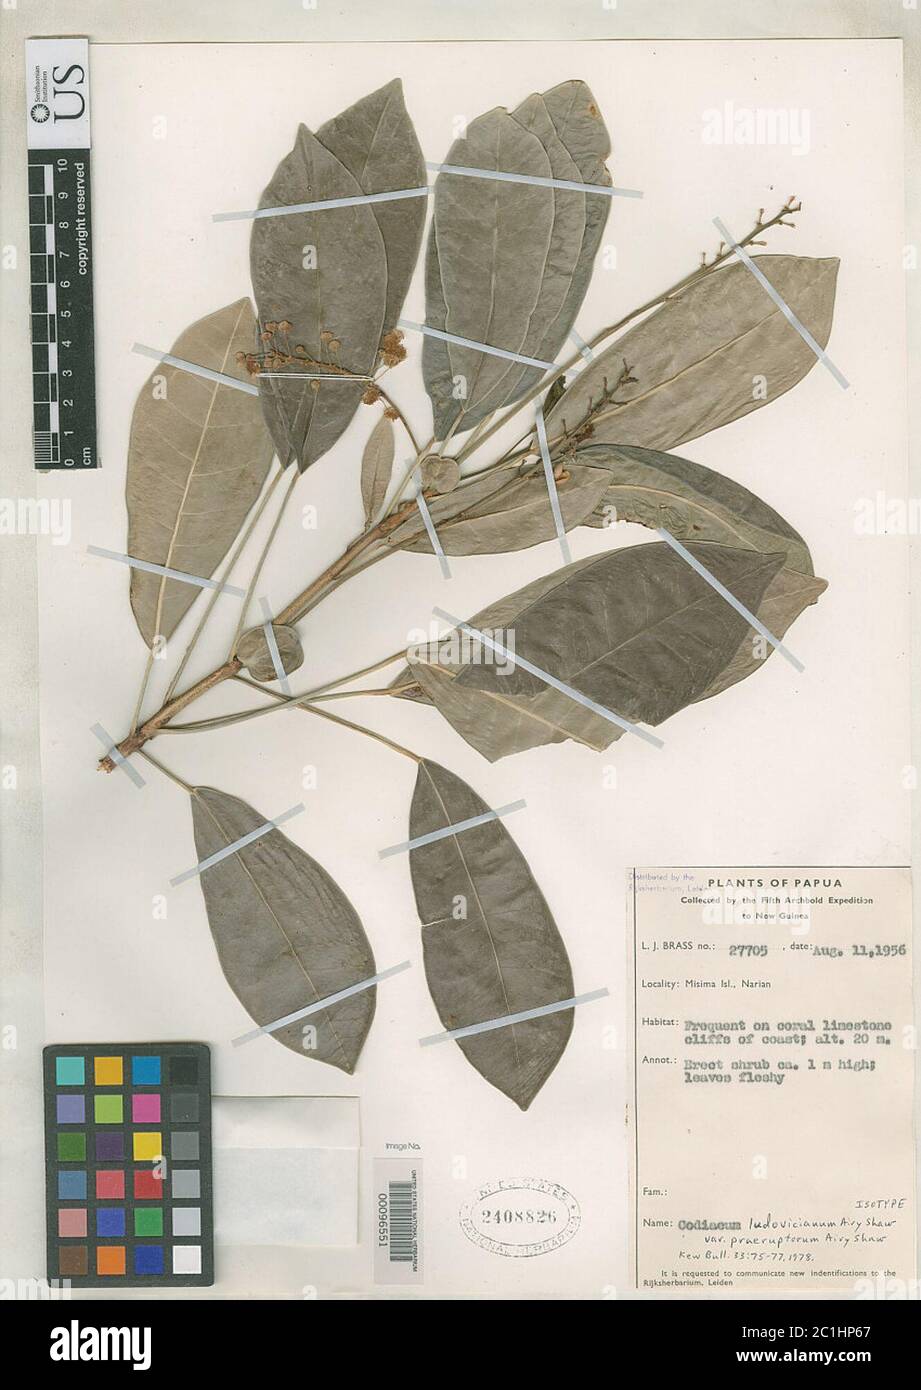 Codiaeum ludovicianum var praeruptorum Airy Shaw Codiaeum ludovicianum var praeruptorum Airy Shaw. Stock Photo